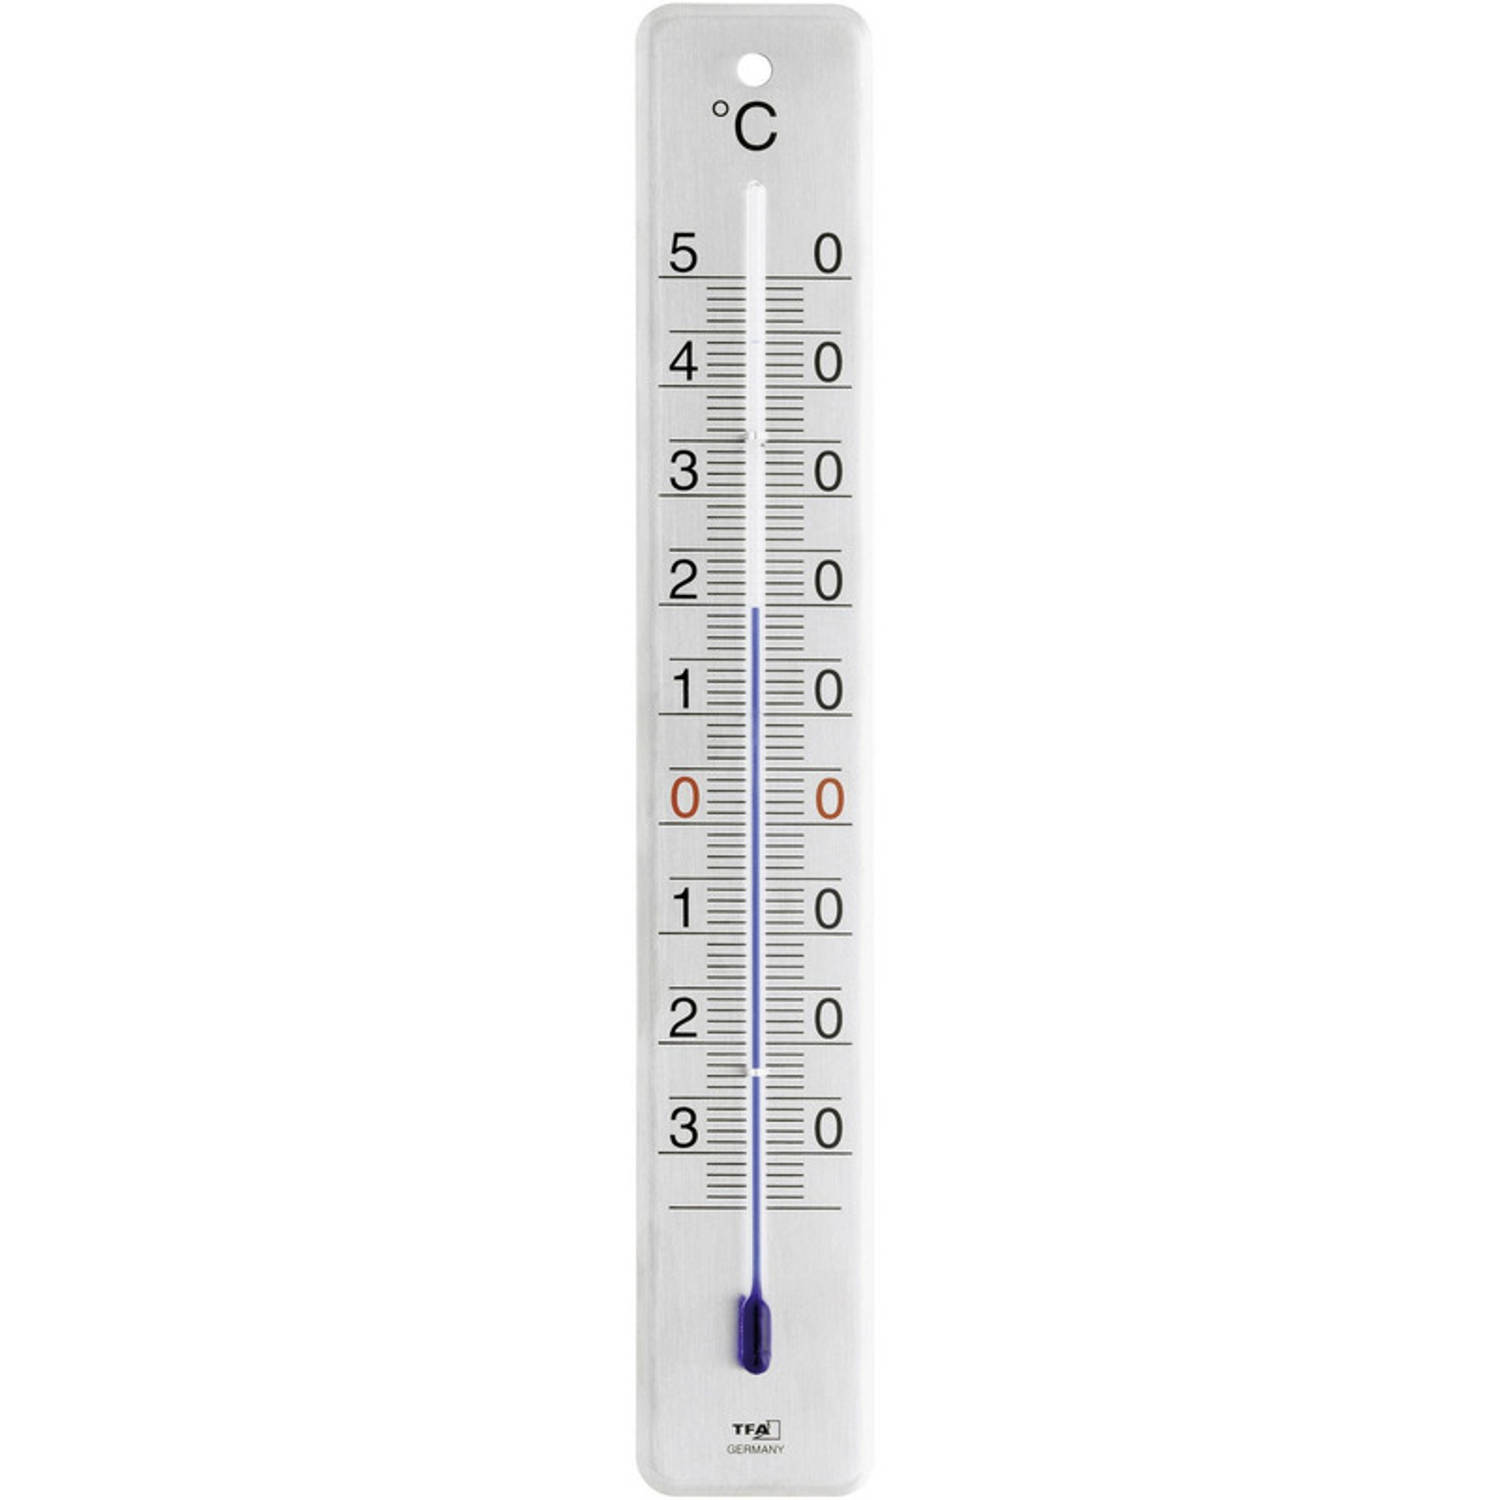 voorkant scherm Gezond Binnen/buiten thermometer RVS 4,5 x 28 cm - Buitenthemometers -  Temperatuurmeters | Blokker